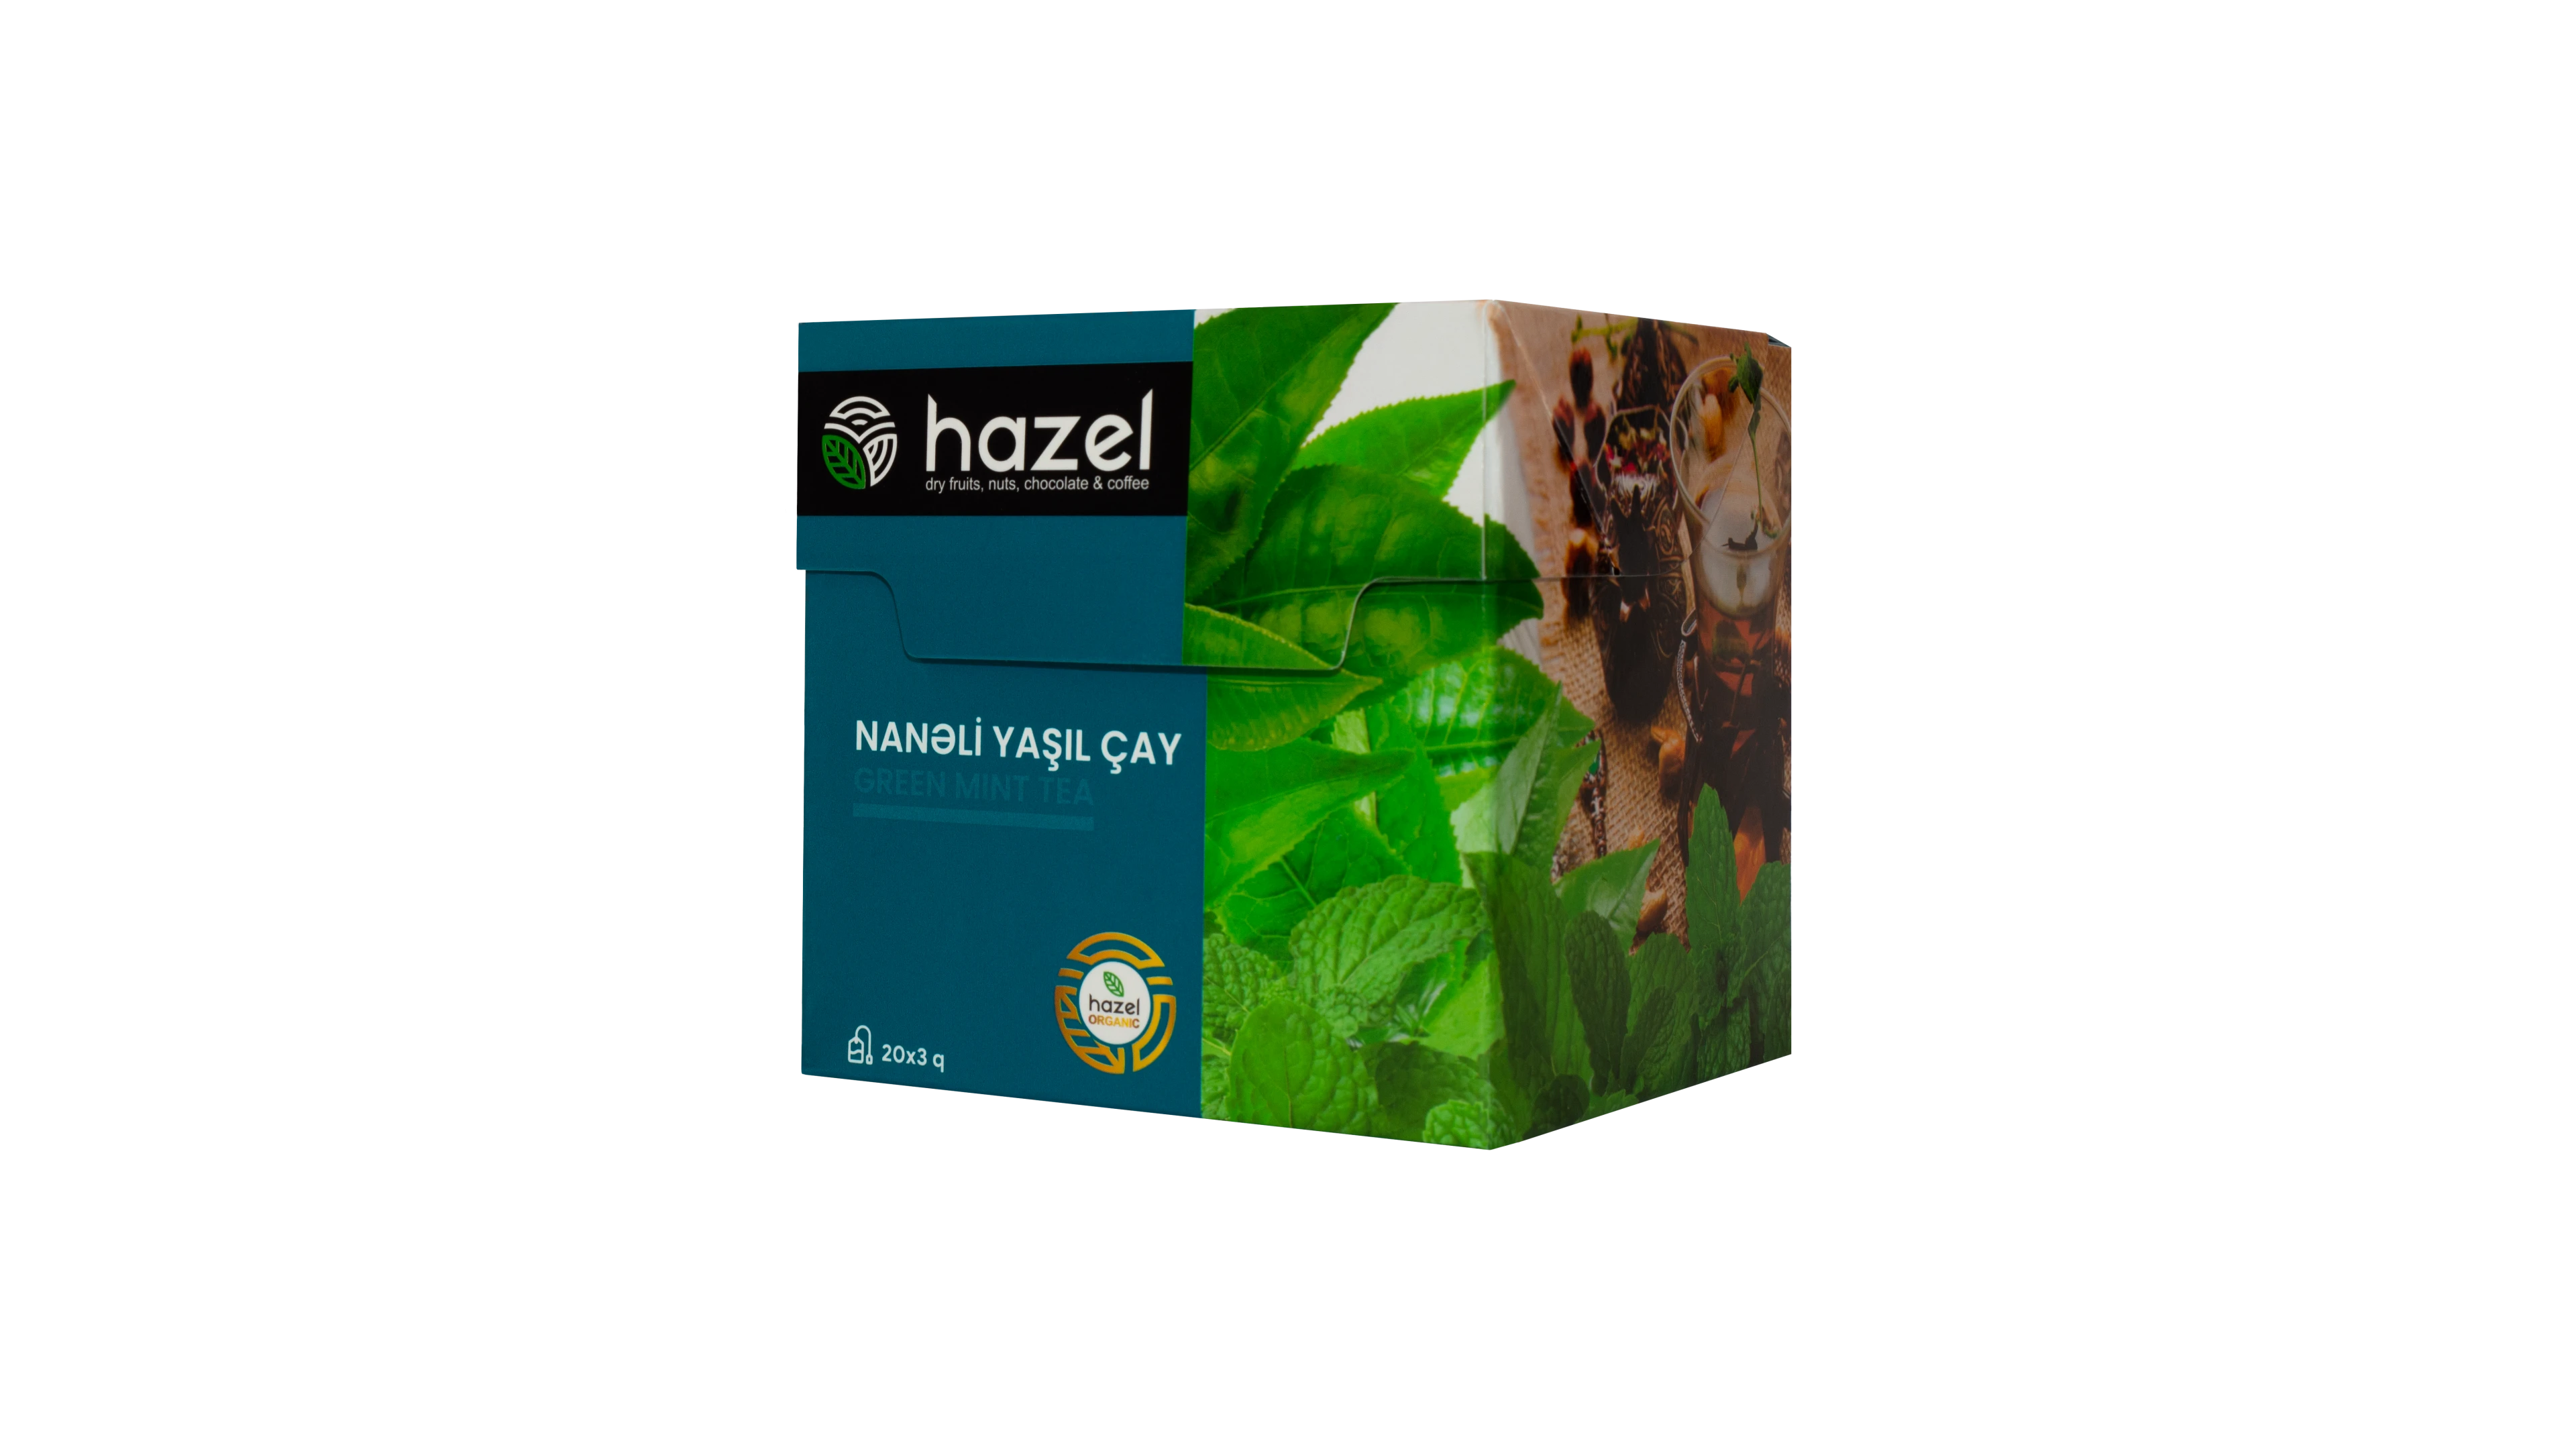 Hazel Nanəli yaşıl çay (paket)